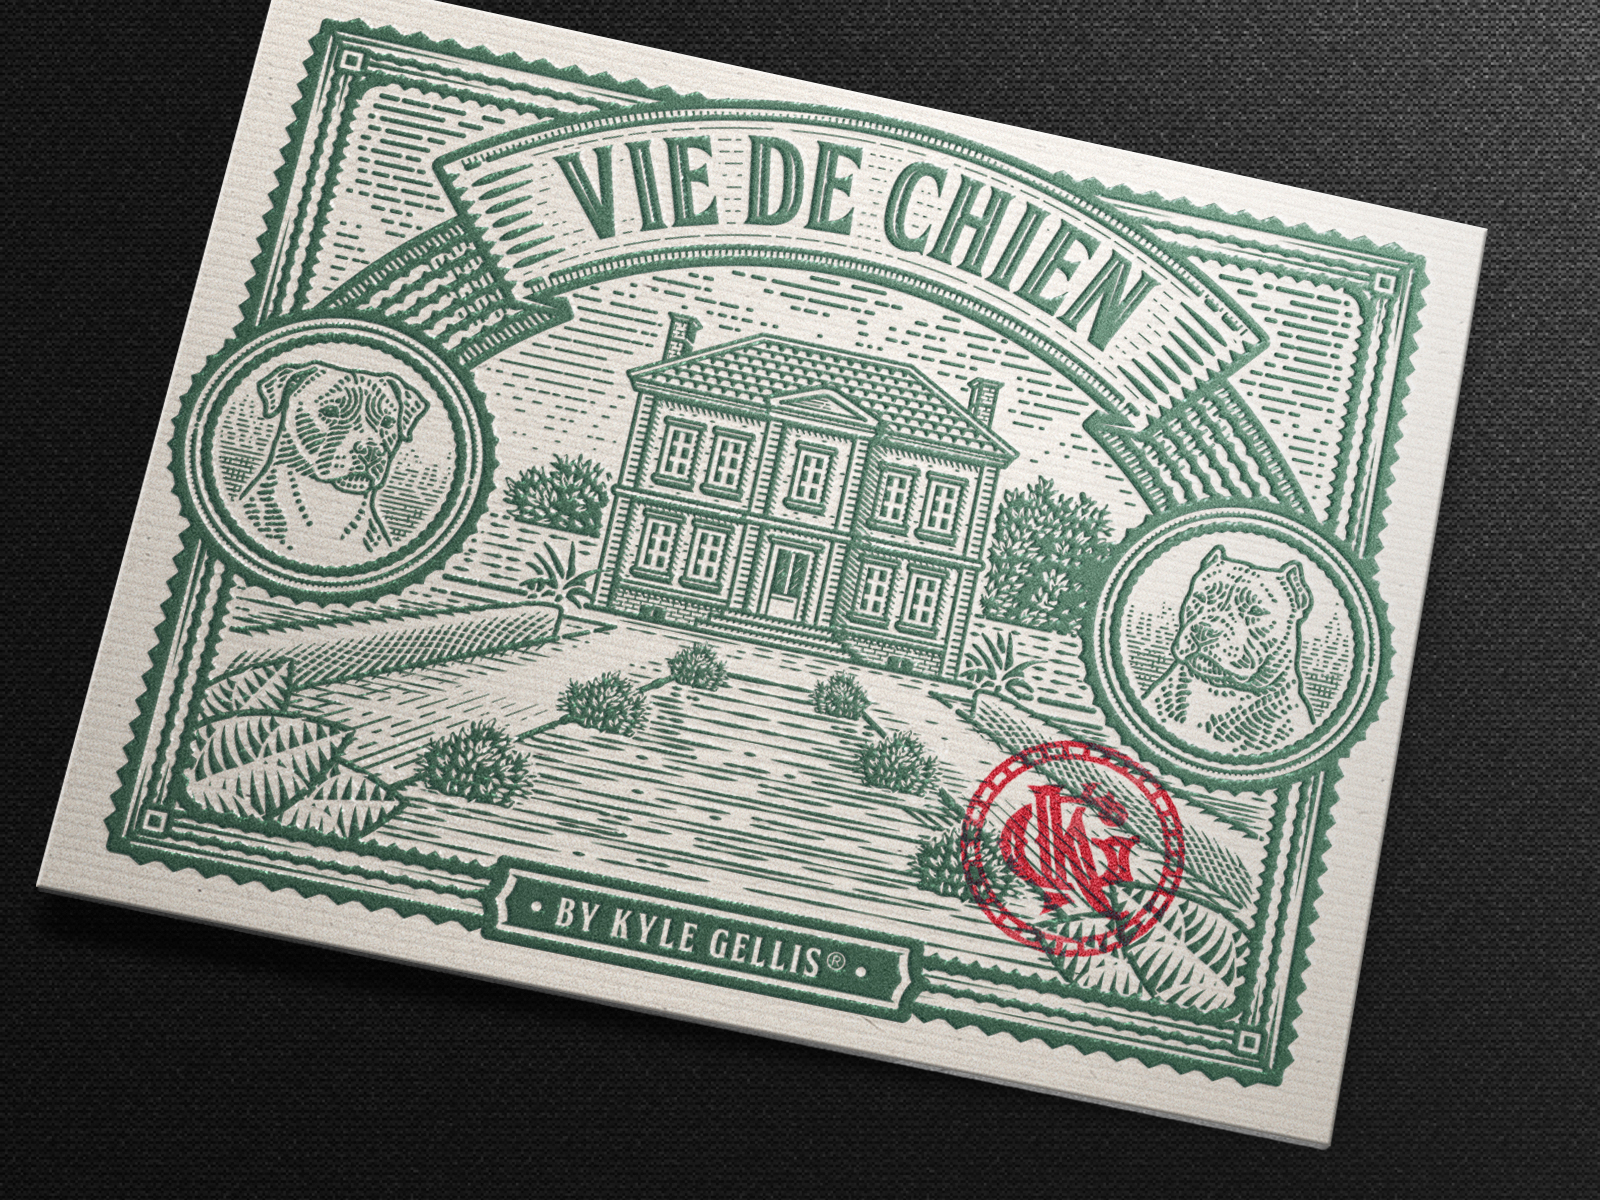 Vie De Chien Illustration (Mockup) cane corso design dog etching house illustration label monogram packaging scratchboard tobacco vintage